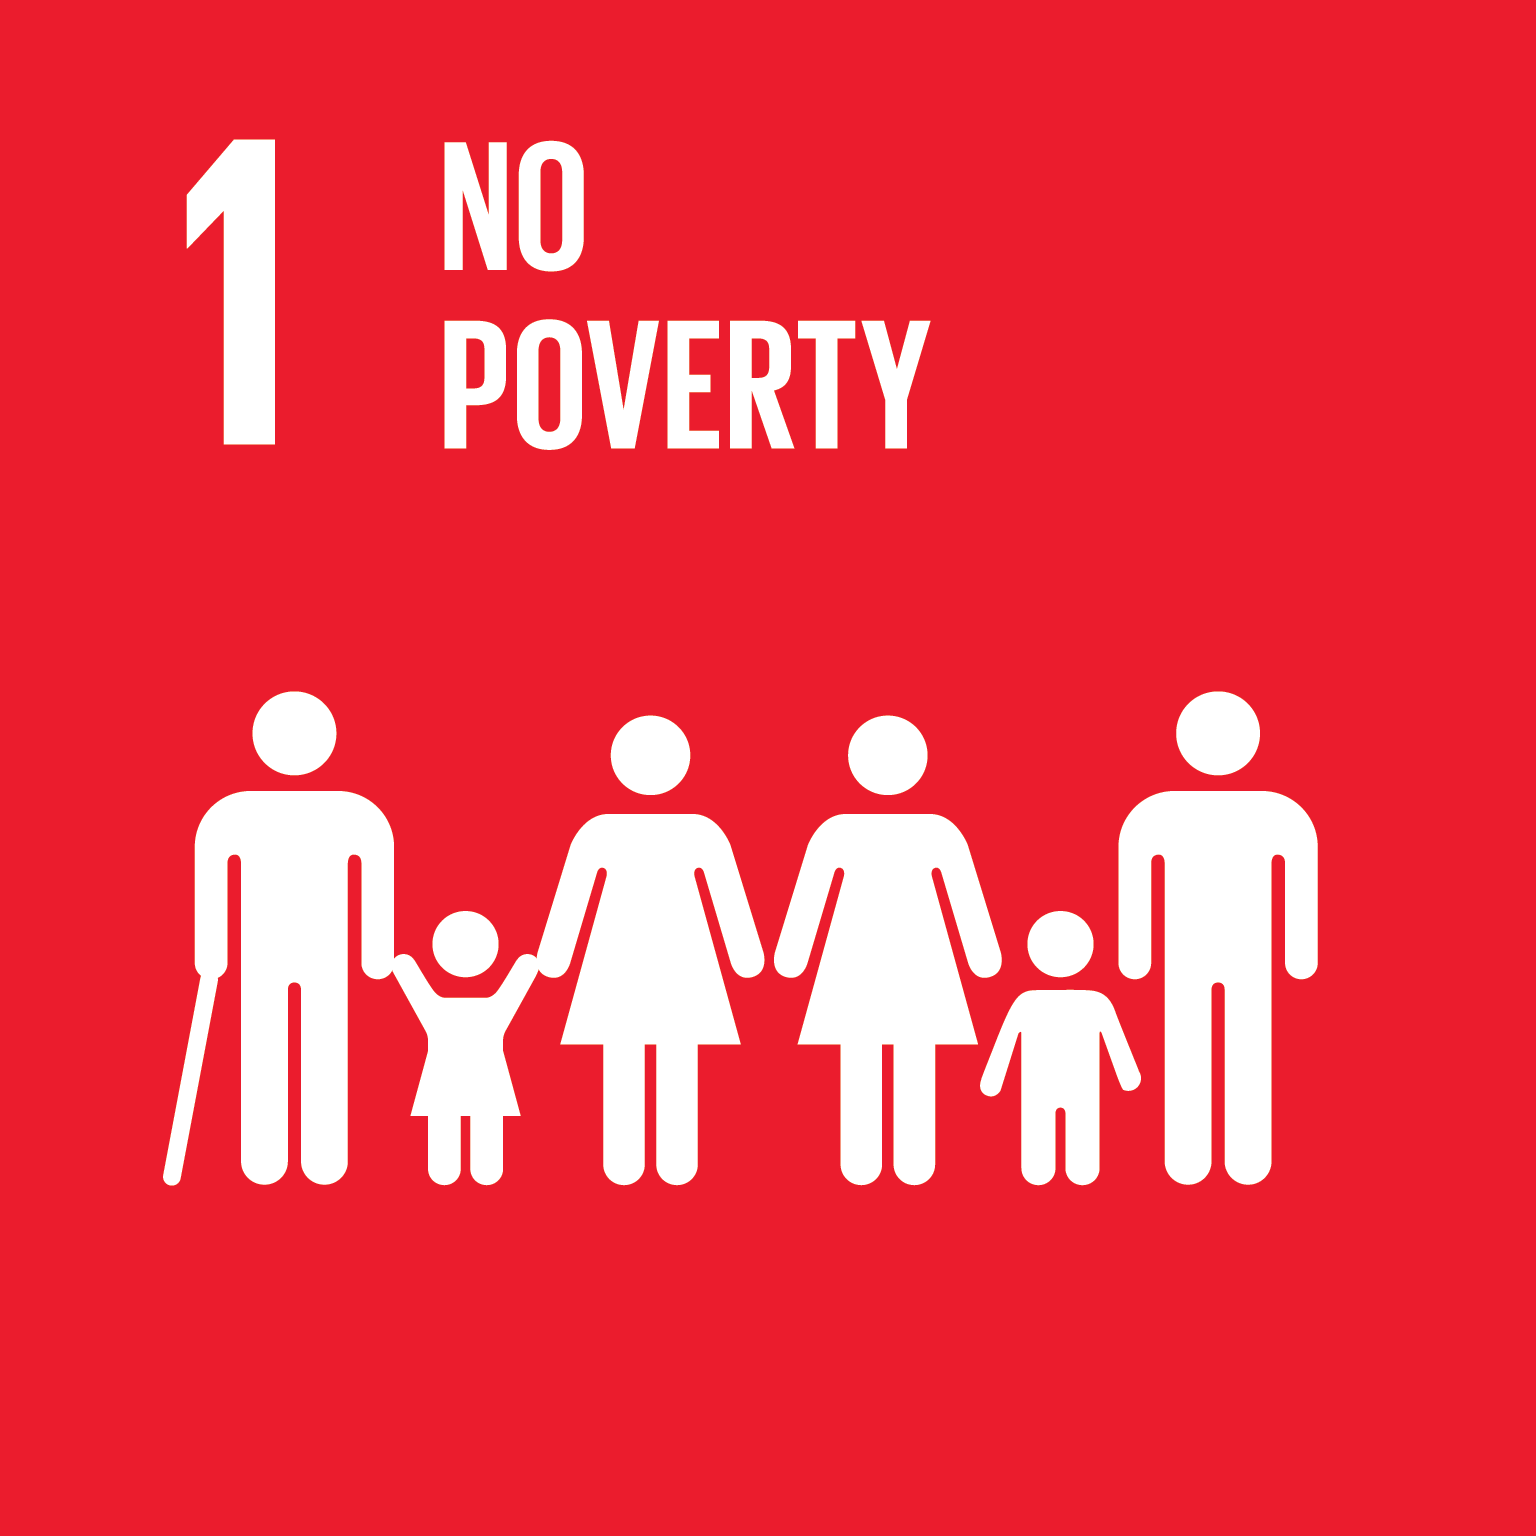 SDG 1.b